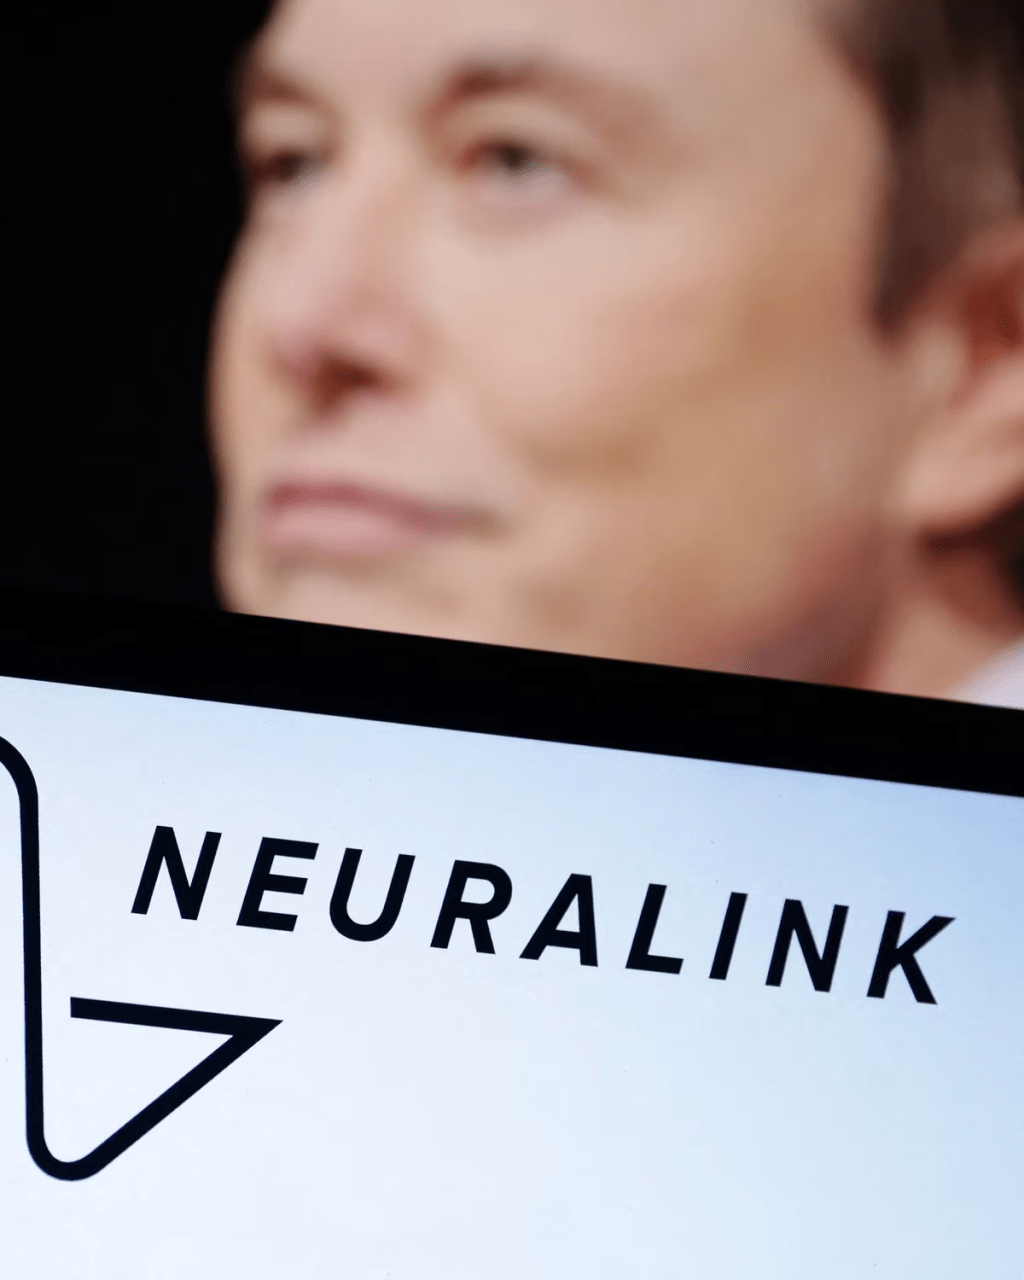 Neuralink是馬斯克旗下的大腦晶片科技公司。路透社